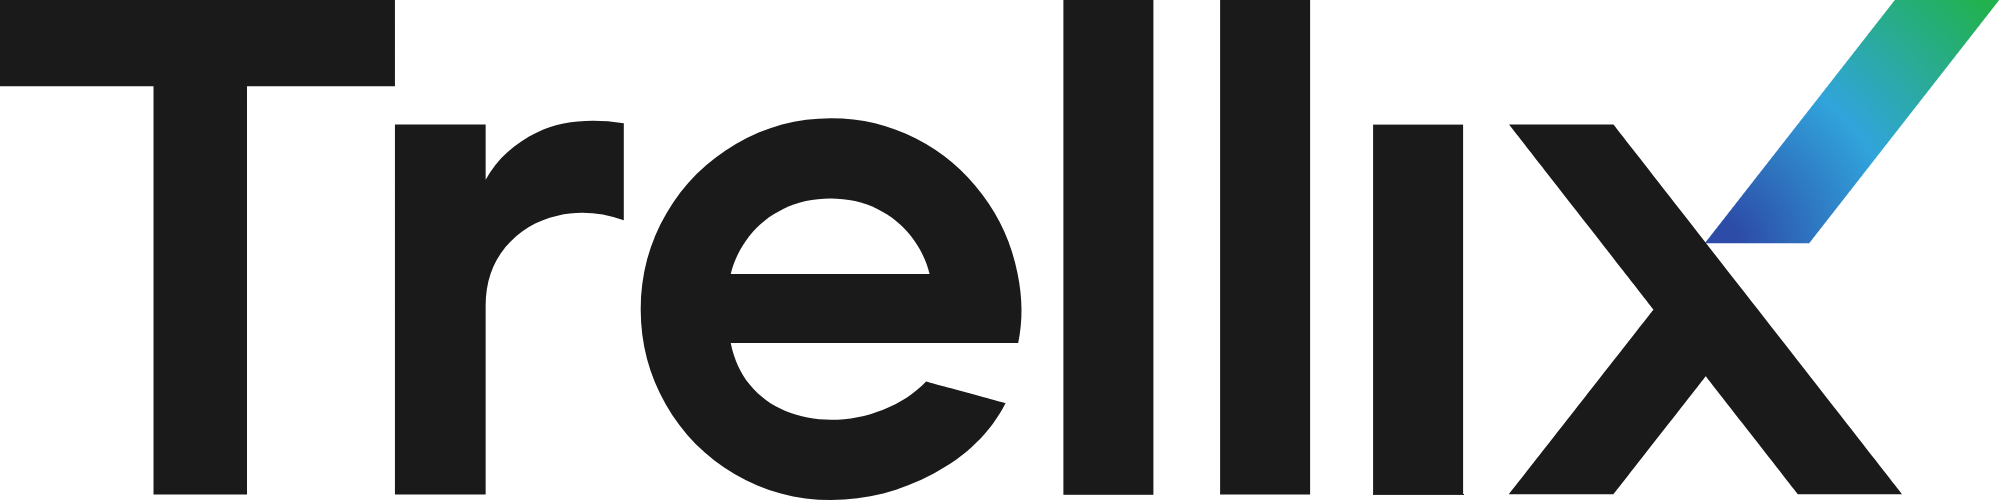 Trellix's logo